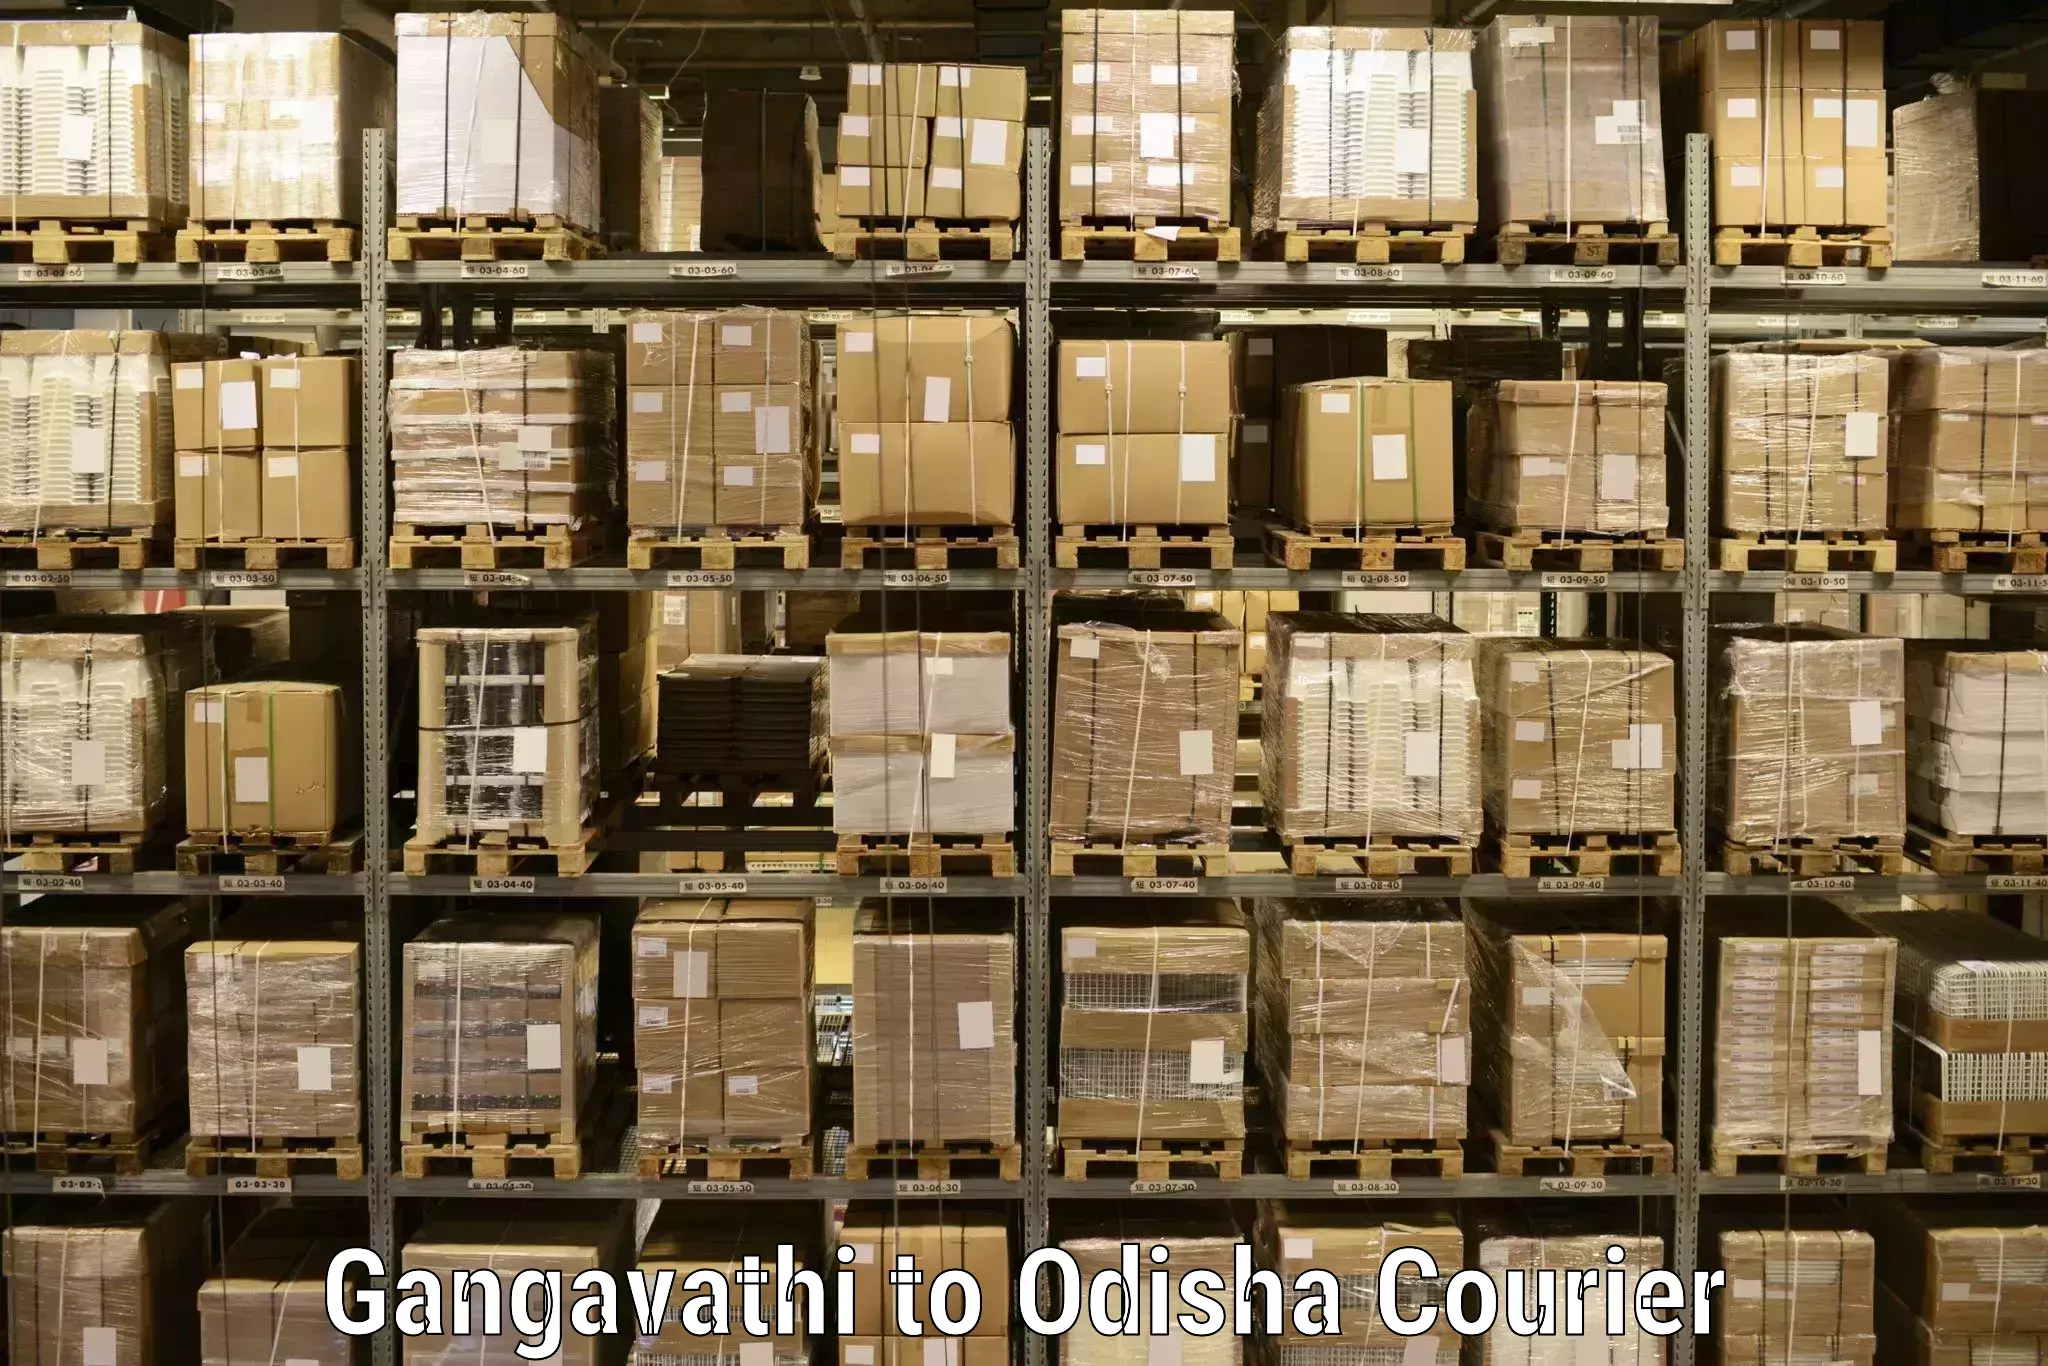 Efficient cargo services Gangavathi to Bissam Cuttack